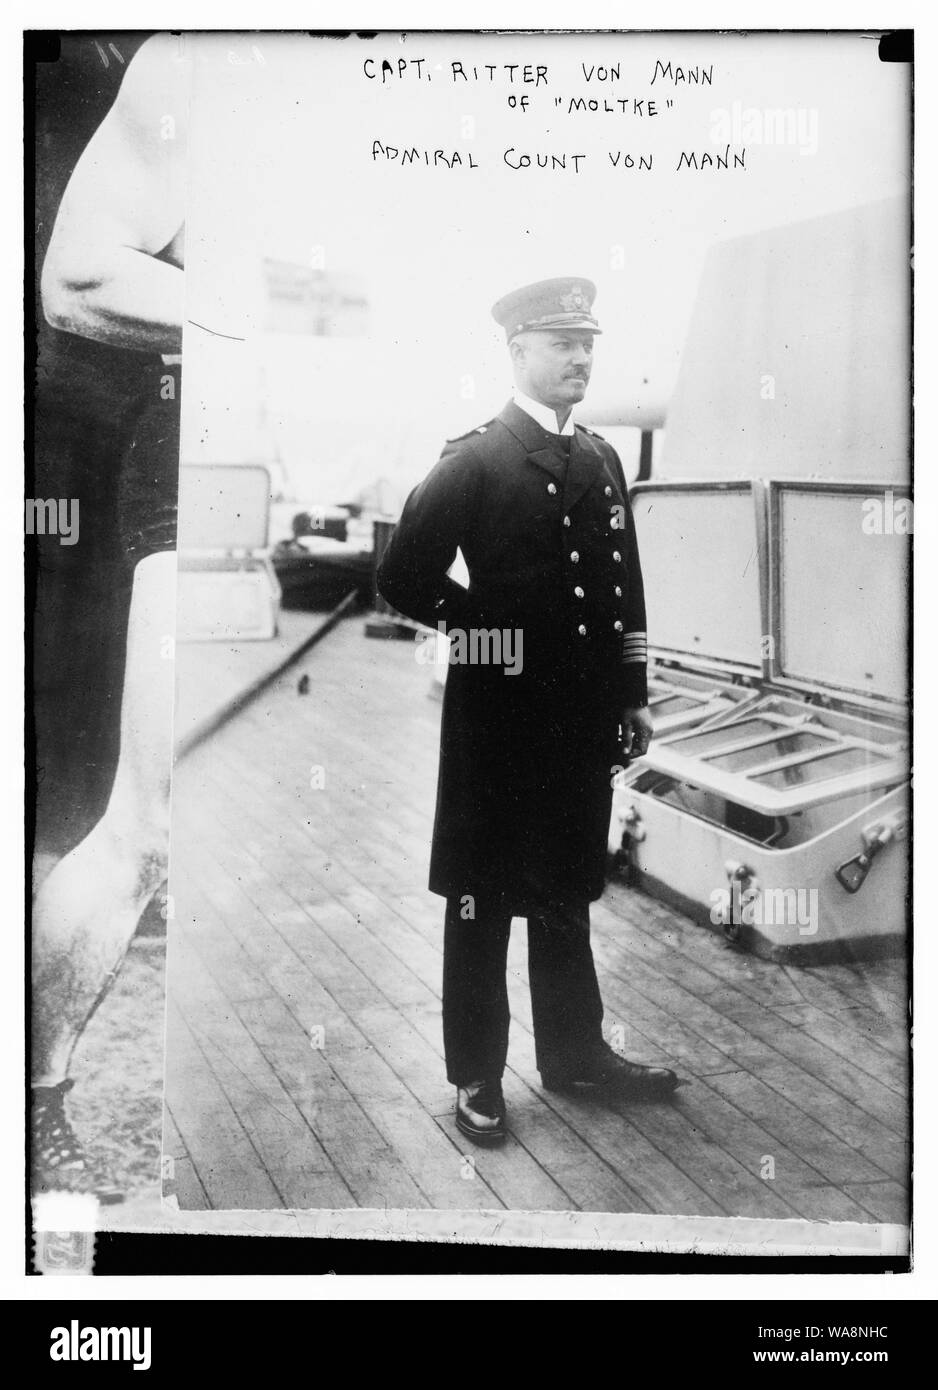 Capt. Ritter von Mann of Moltke; Admiral Count von Mann Stock Photo